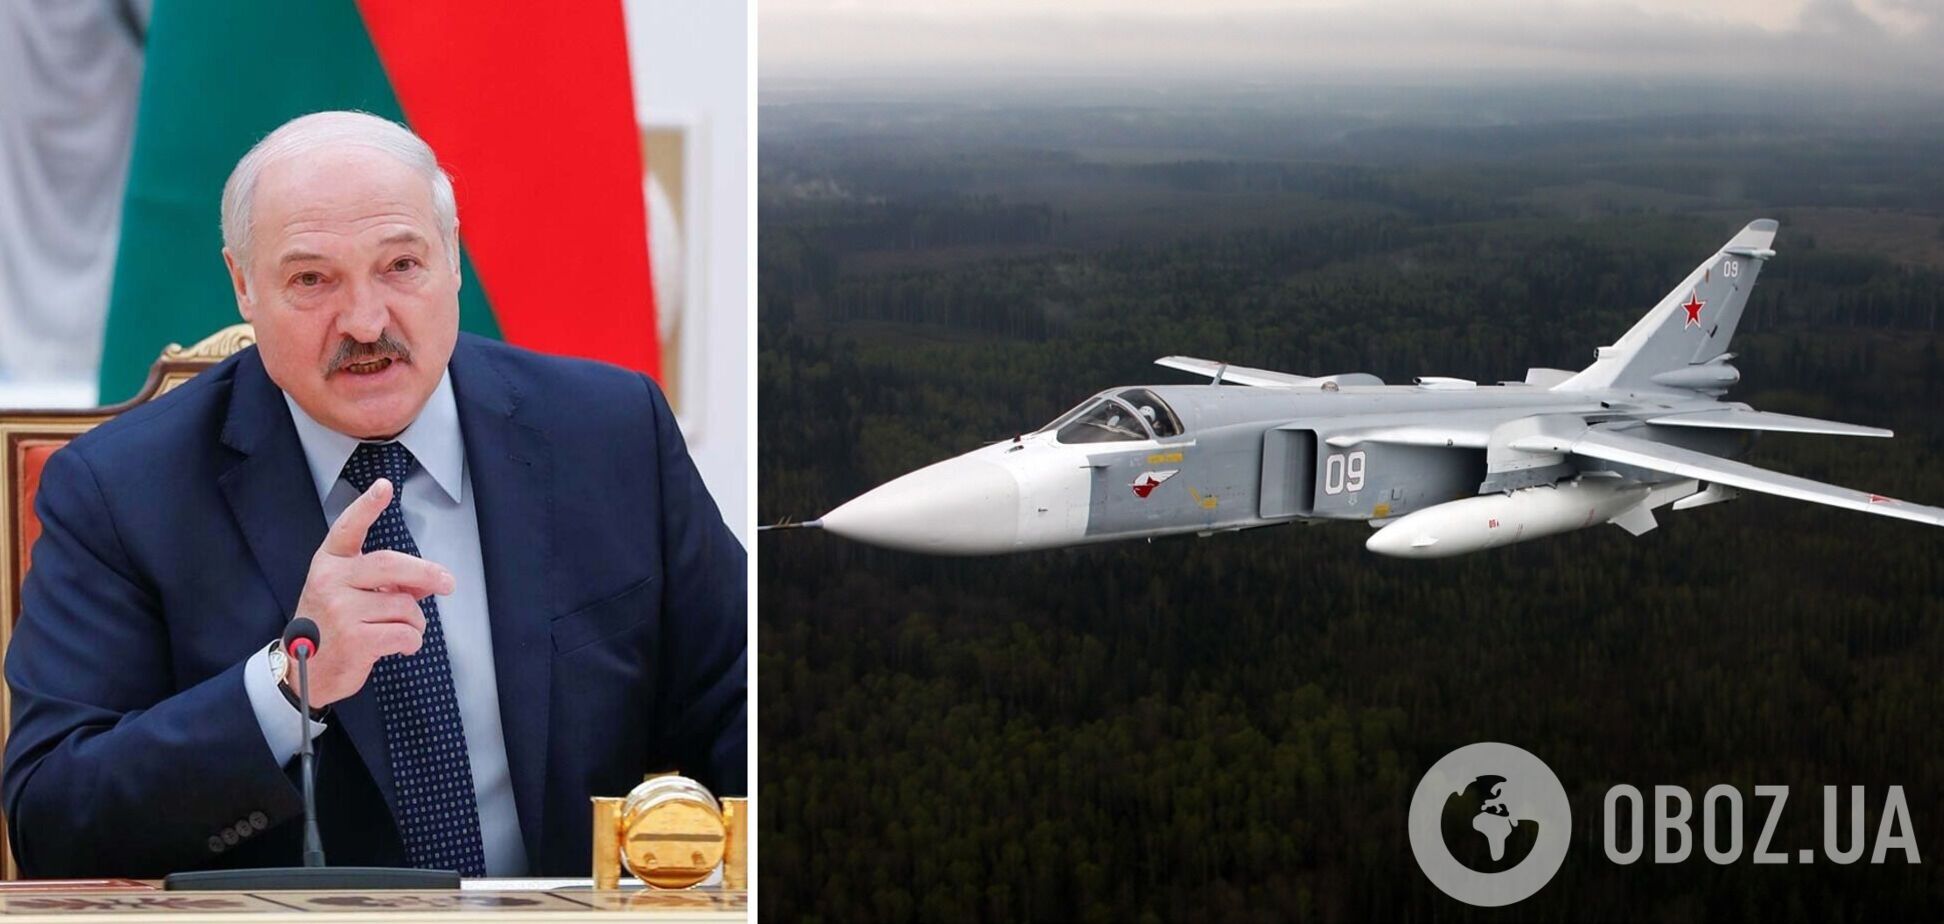 'Вы думаете, что мы языком ляпаем?' Лукашенко заявил, что беларусские военные самолеты готовы нести ядерное оружие